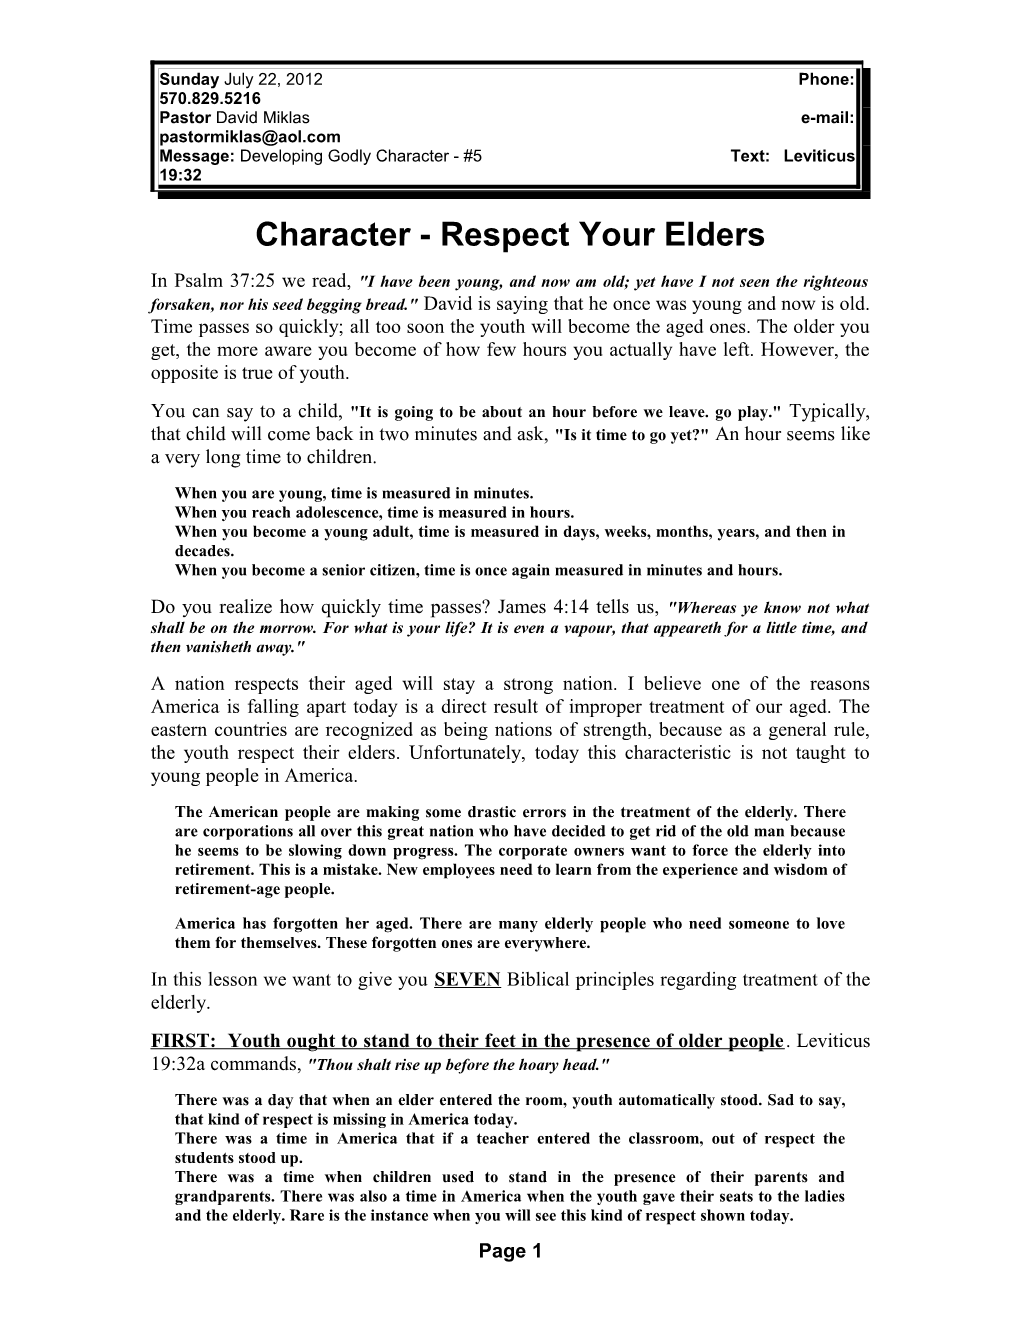 Character - Respect Your Elders